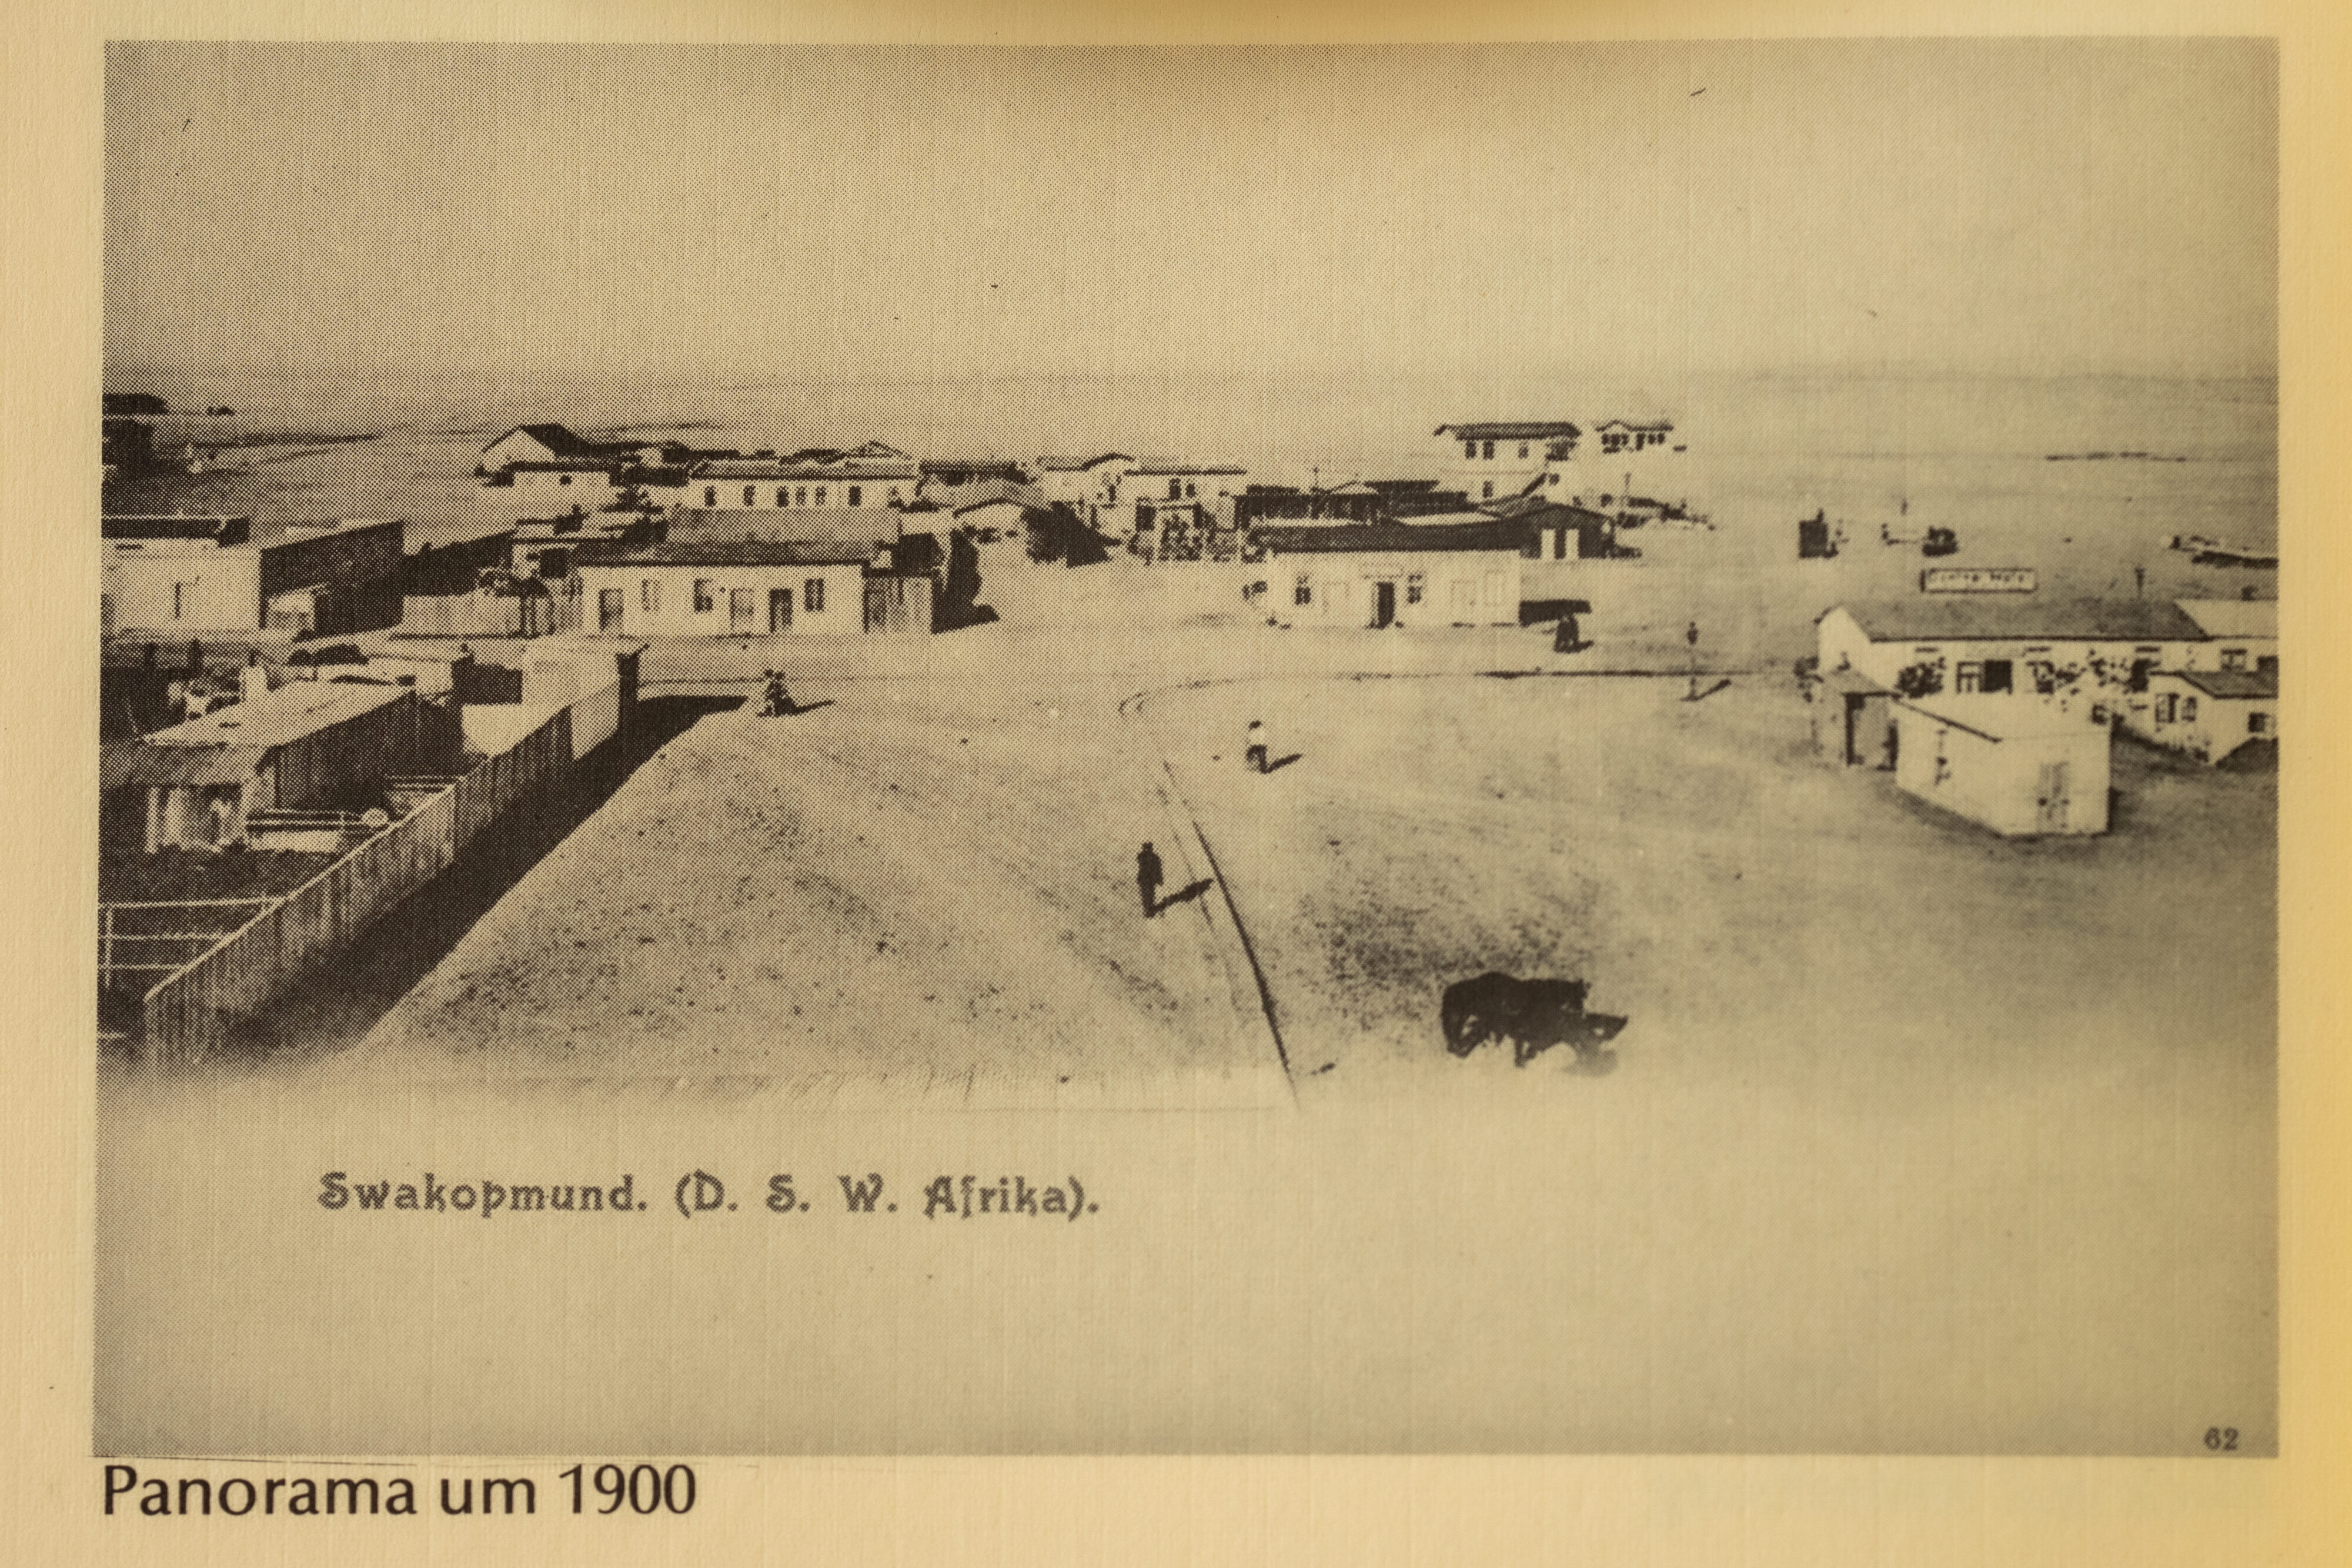 Swakopmund around 1900